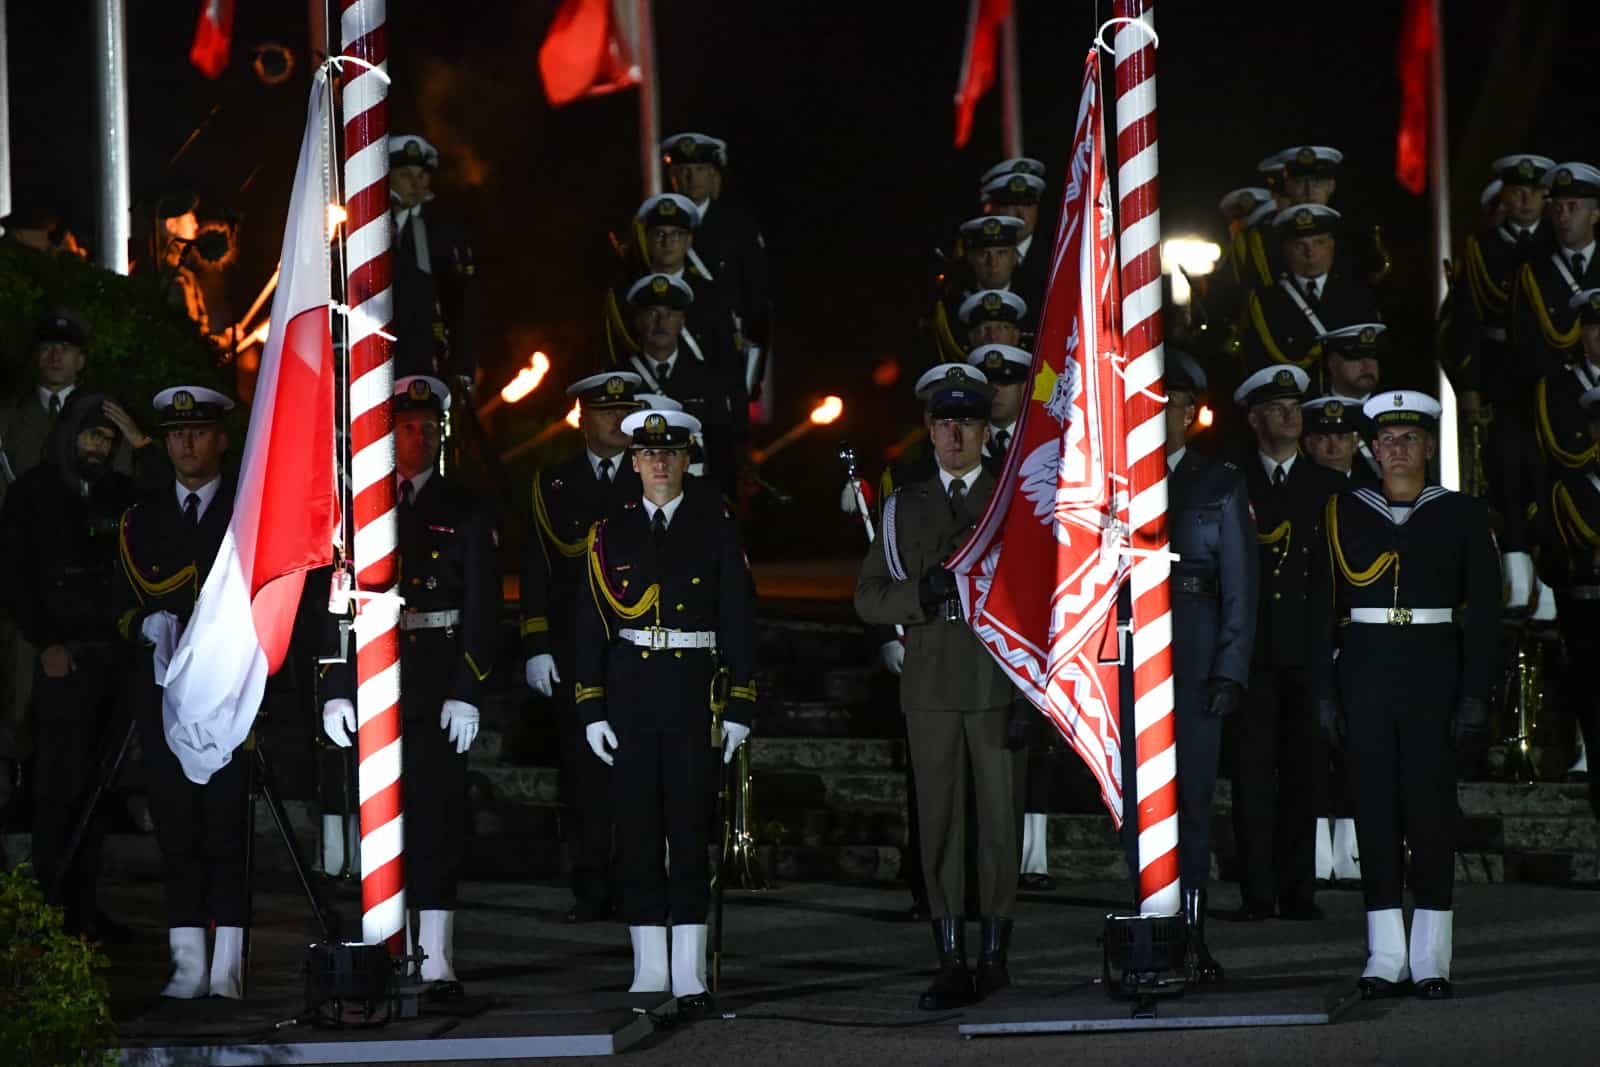 Uroczyste obchody 83. rocznicy wybuchu II wojny światowej przed Pomnikiem Obrońców Wybrzeża na Westerplatte w Gdańsku